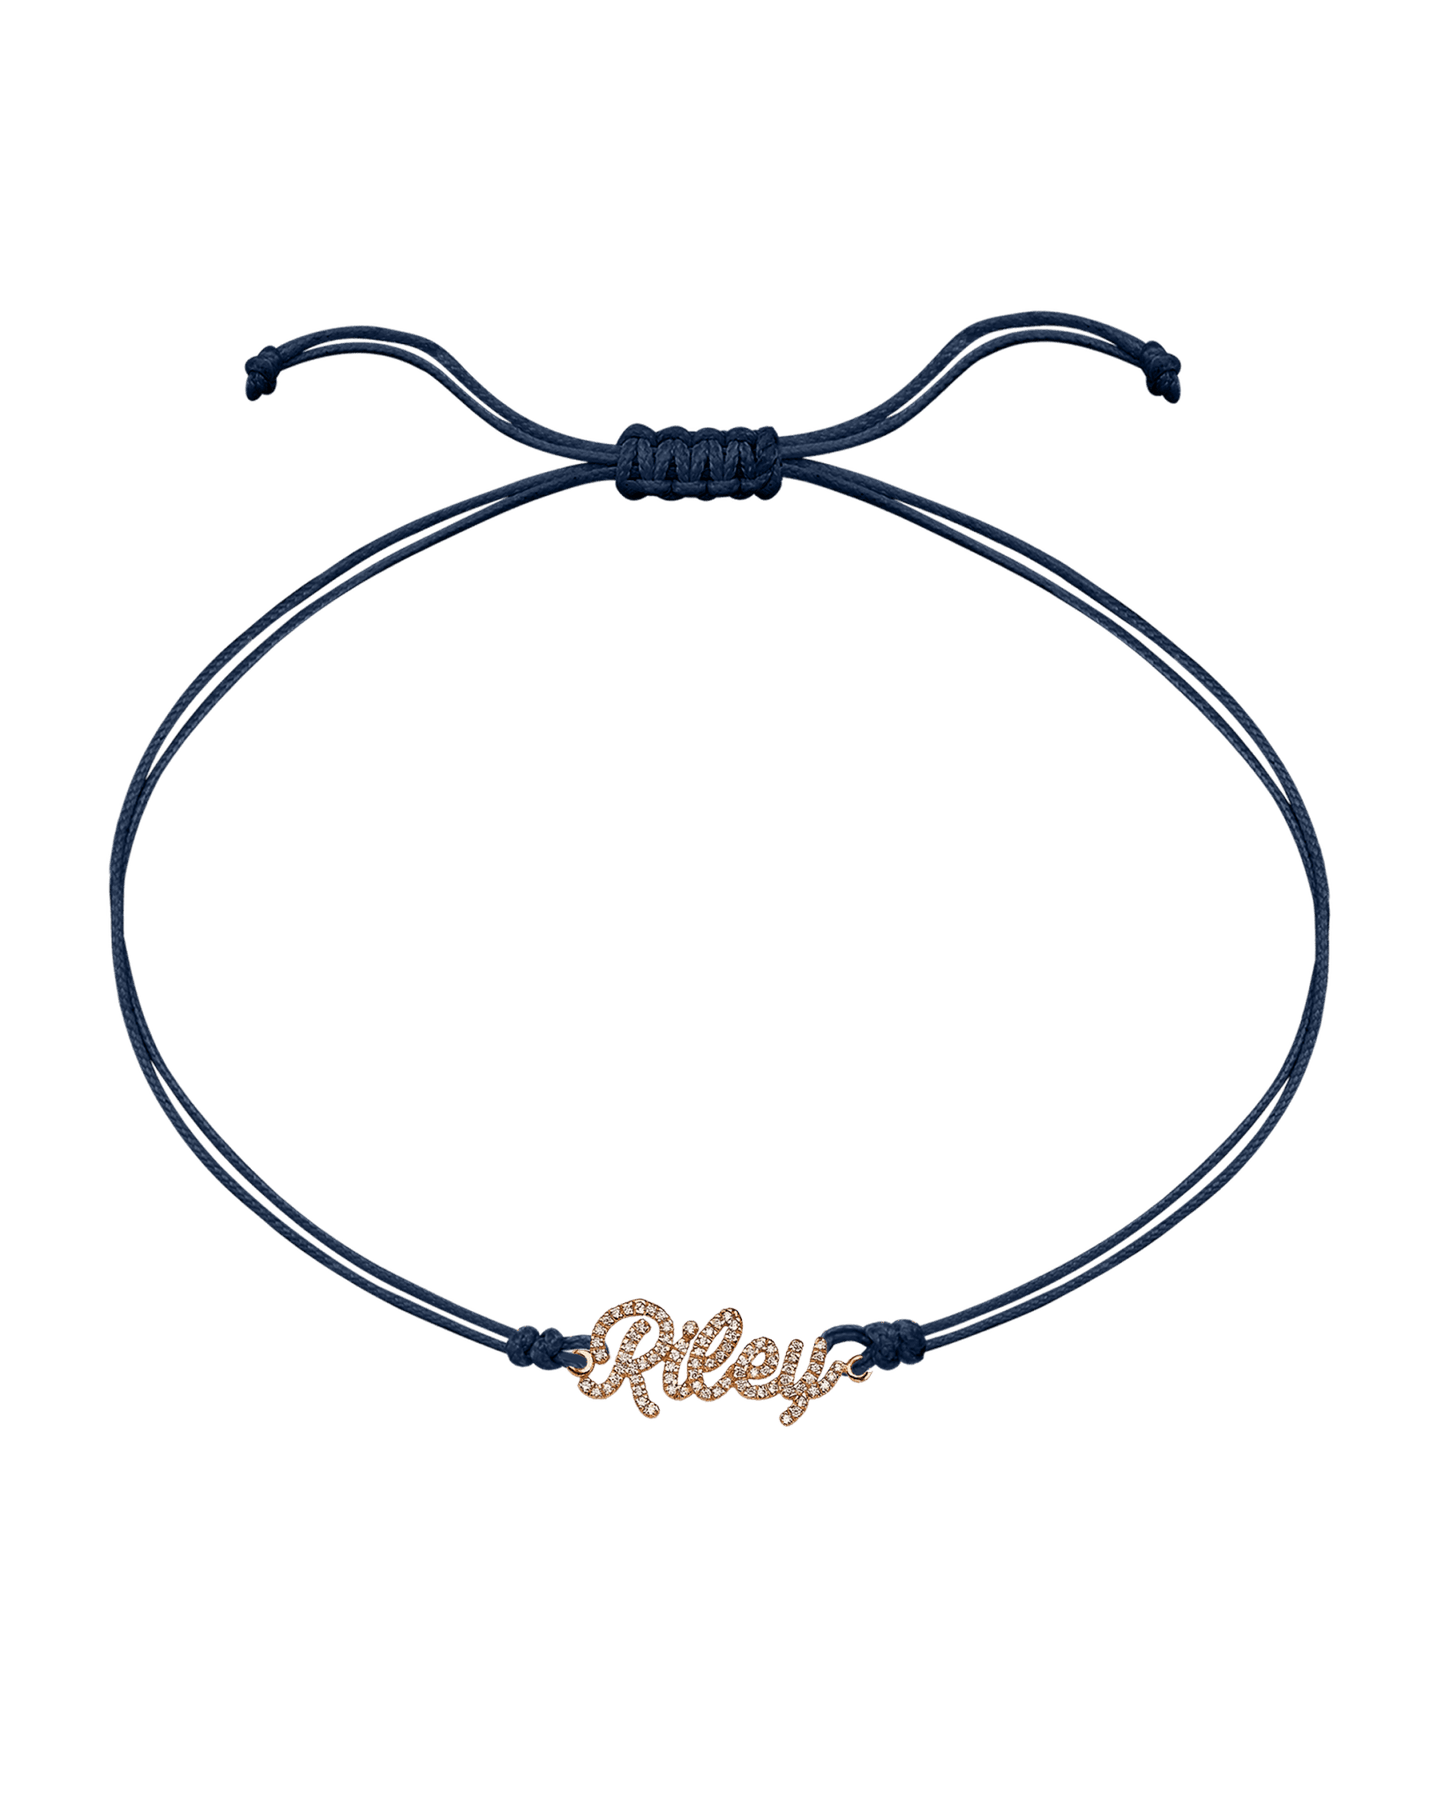 Paved Name Plate String of Love - 14K Rose Gold Bracelet 14K Solid Gold Navy Blue 1 